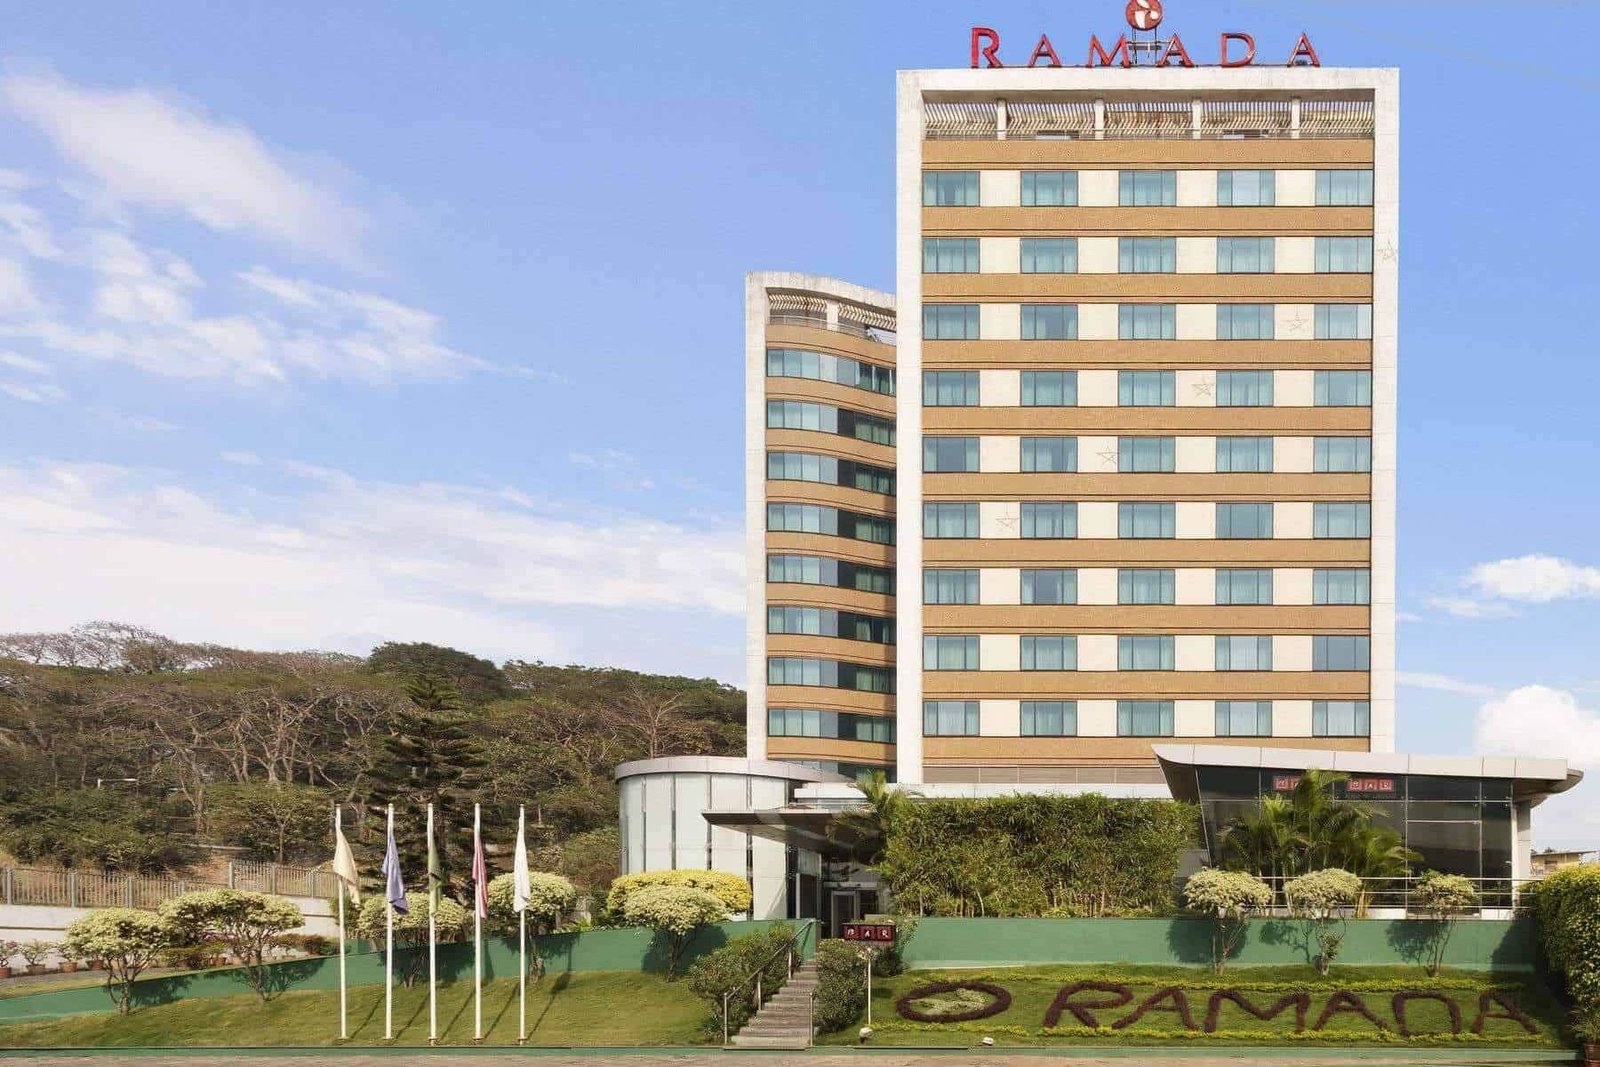 The Hotel Remada